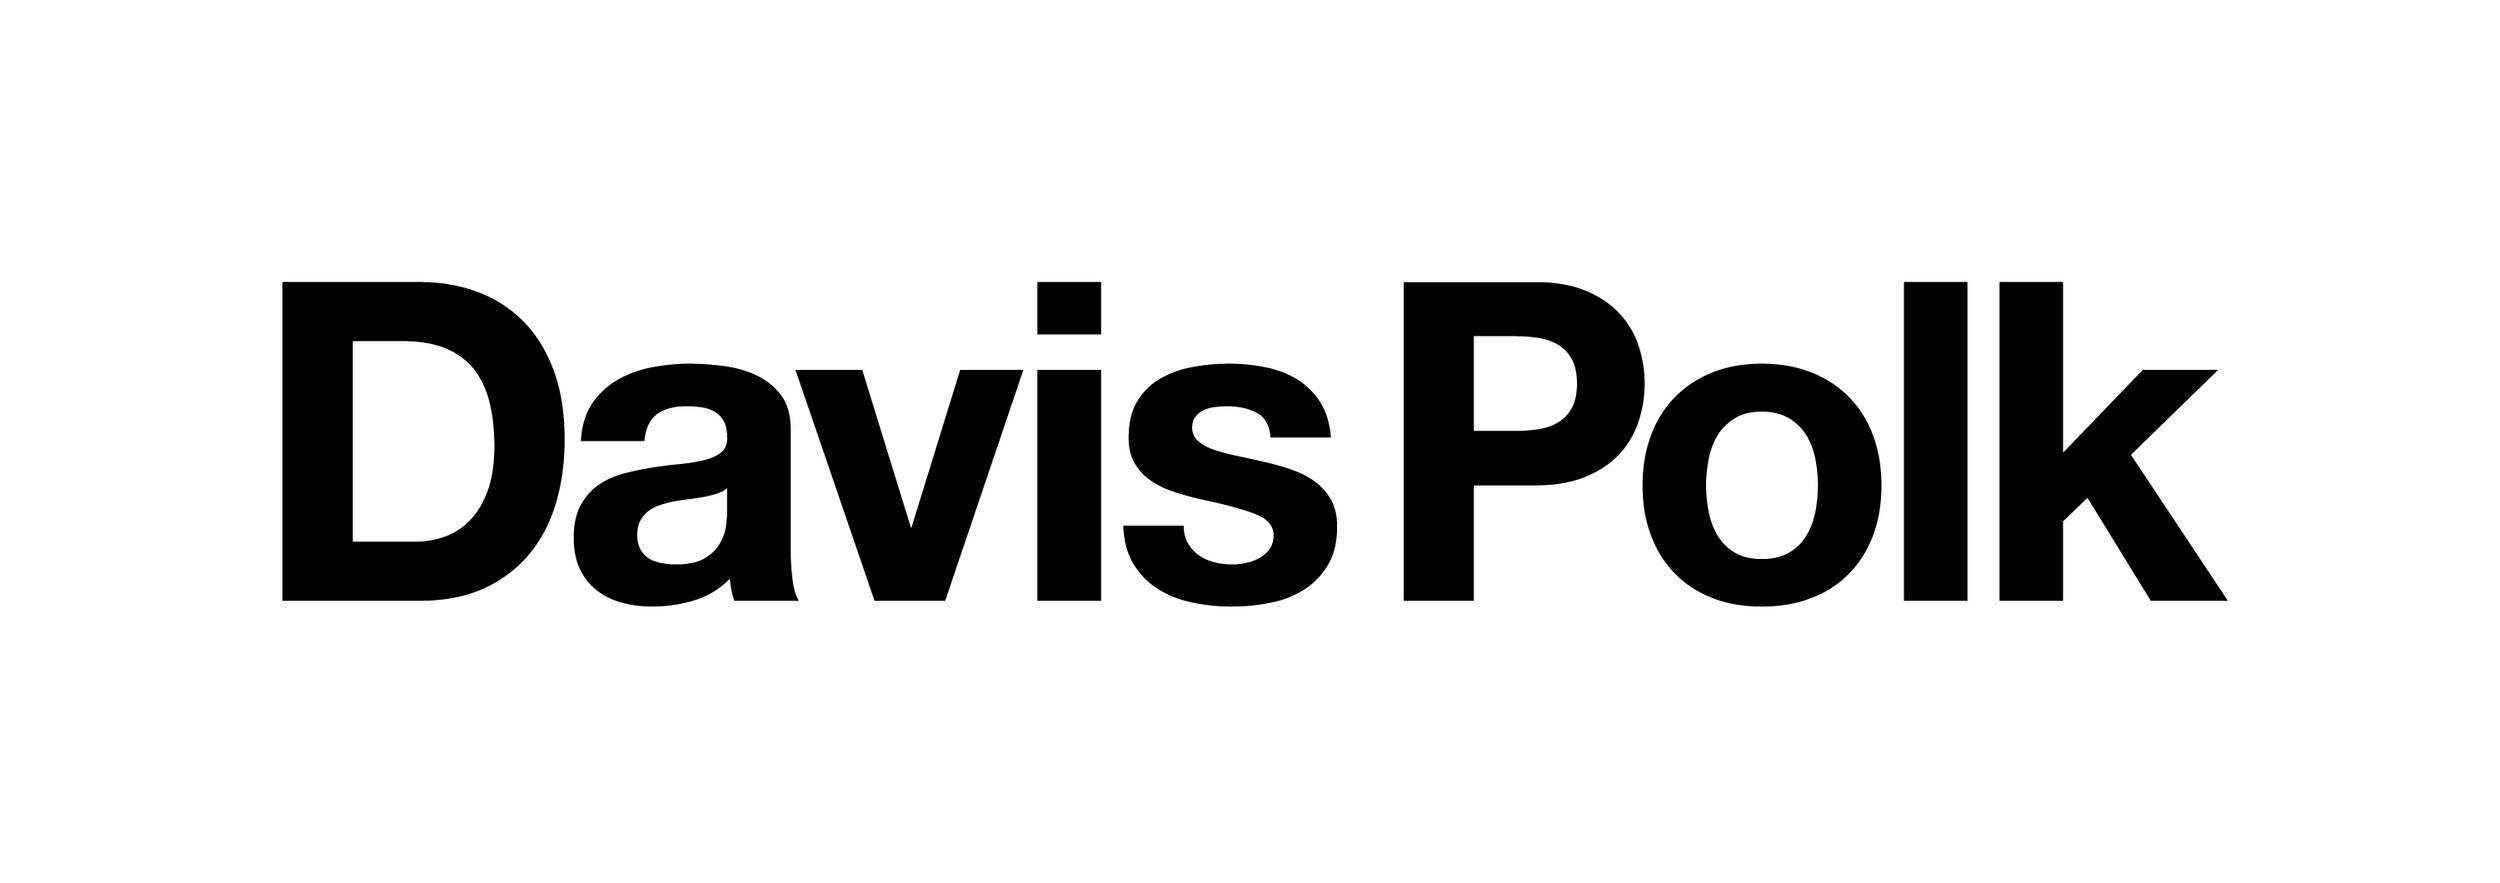 Davis Polk Logo-01.jpg